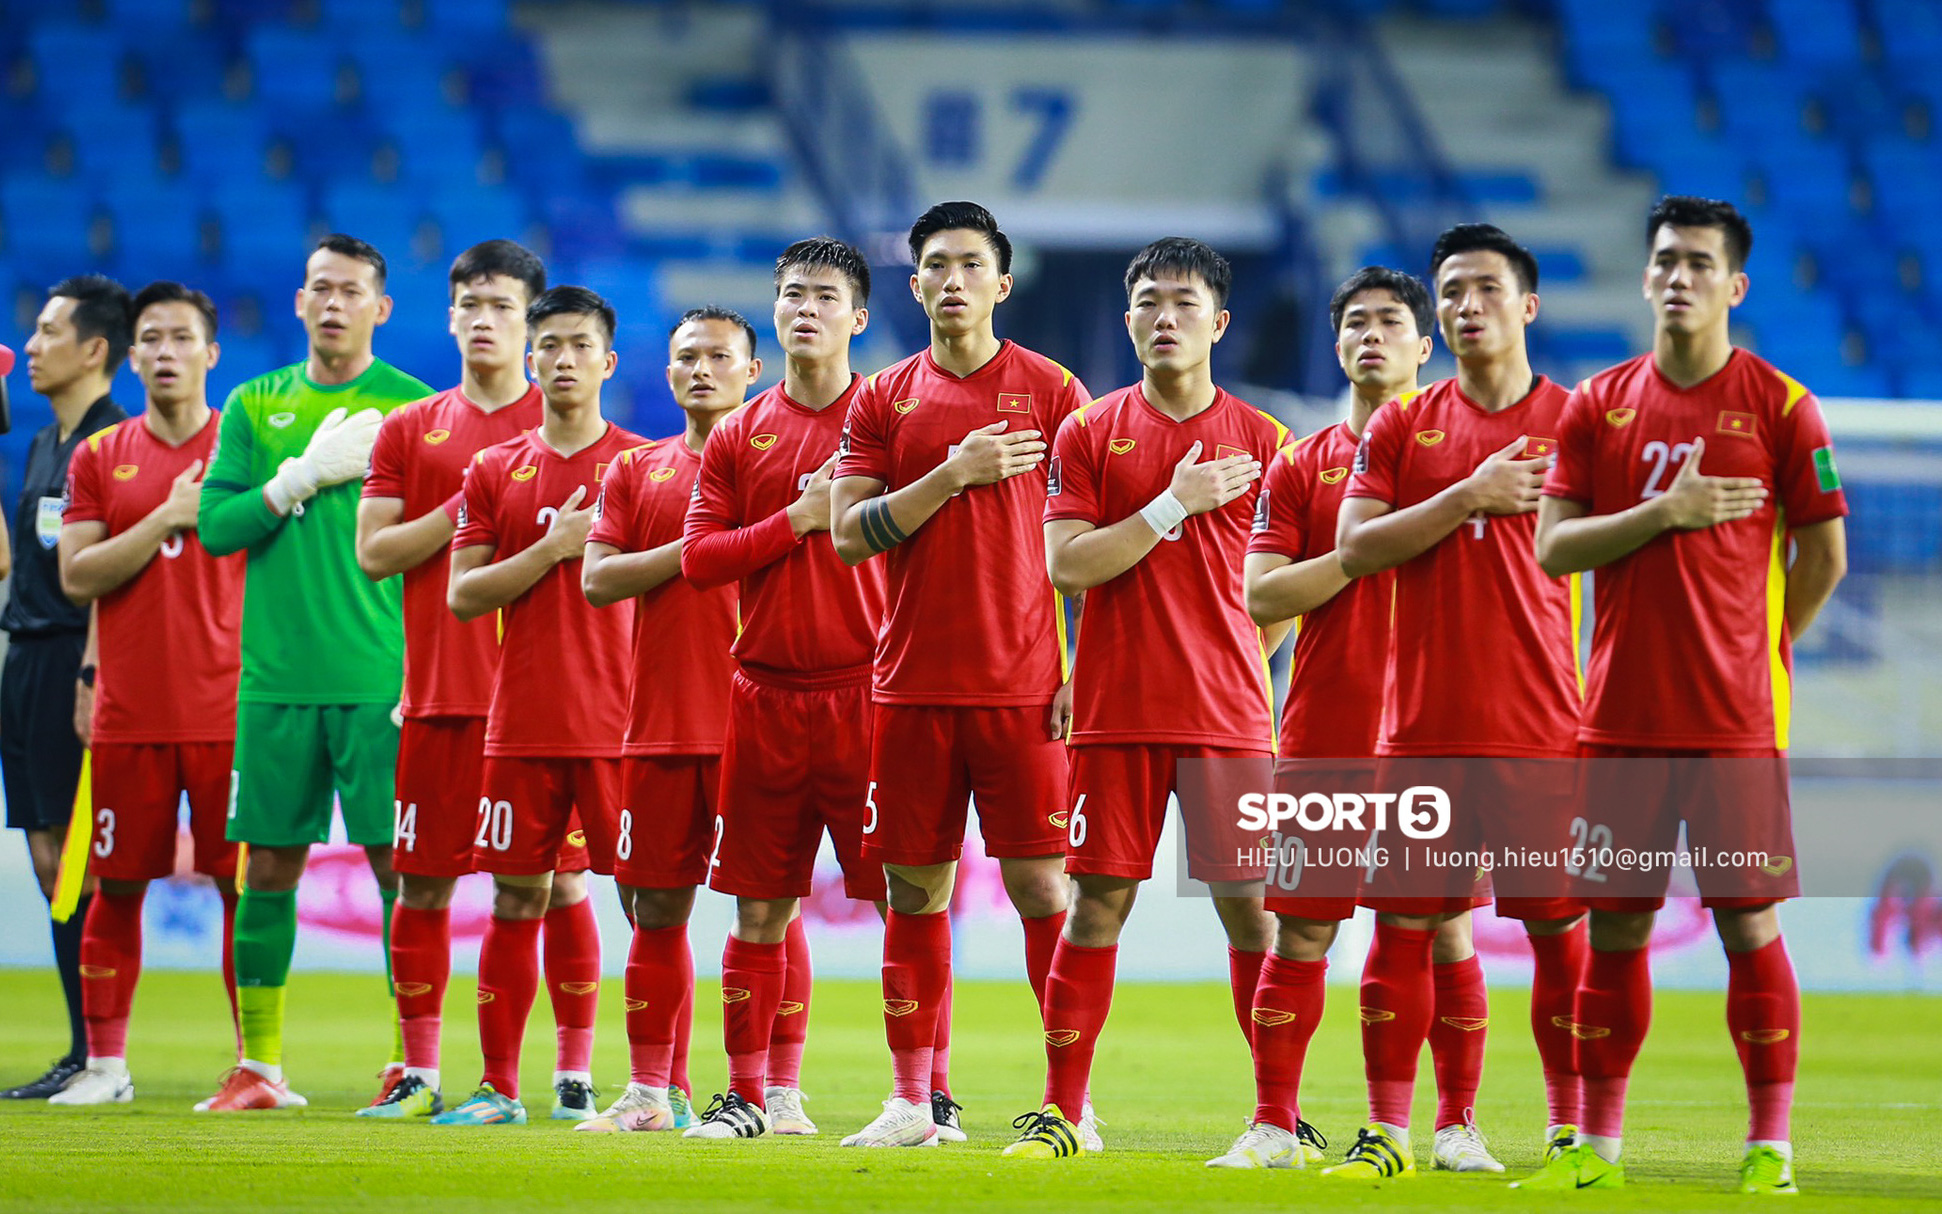 Đội tuyển Việt Nam là 1 trong 2 đội tại bảng B vòng loại thứ 3 World Cup 2022 chưa từng xuất hiện tại vòng CK World Cup